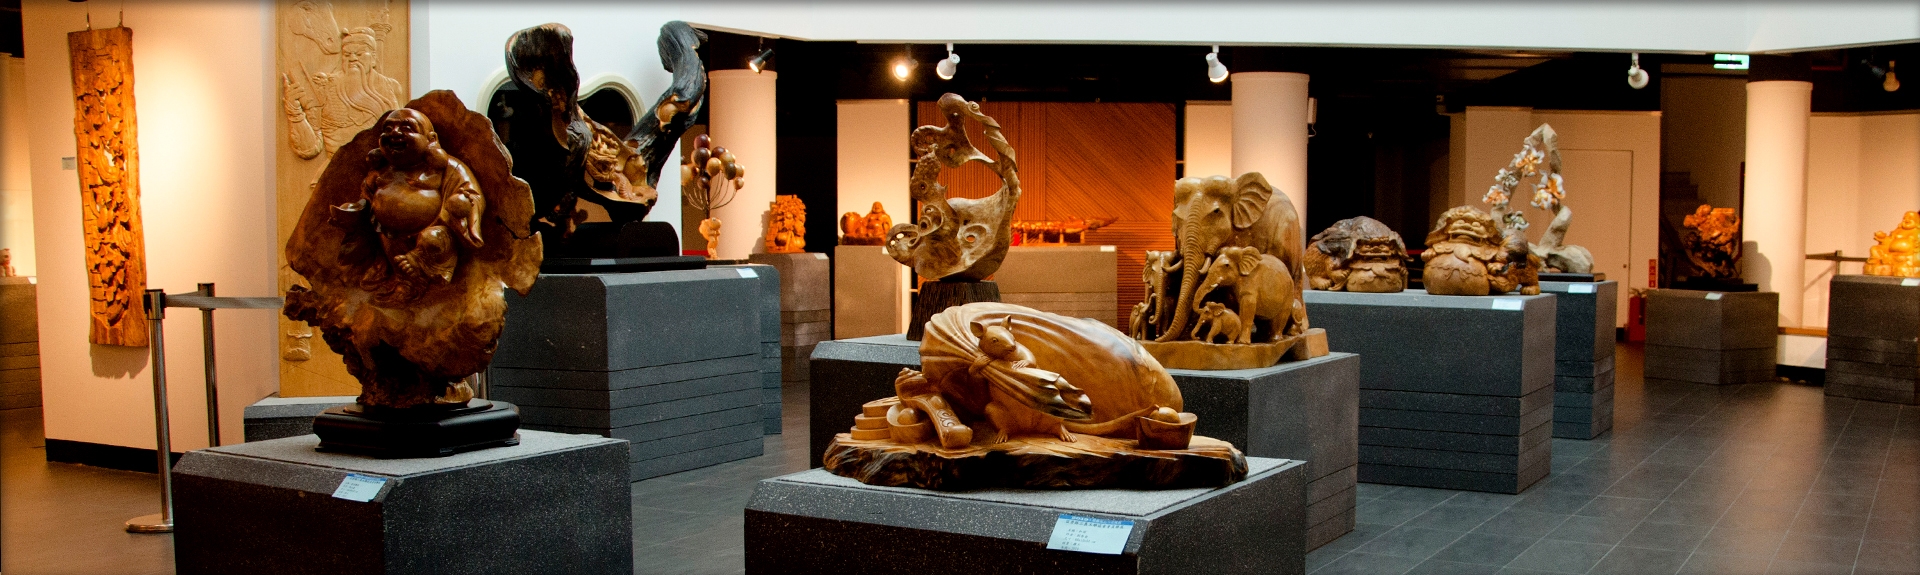 三義木雕博物館作品